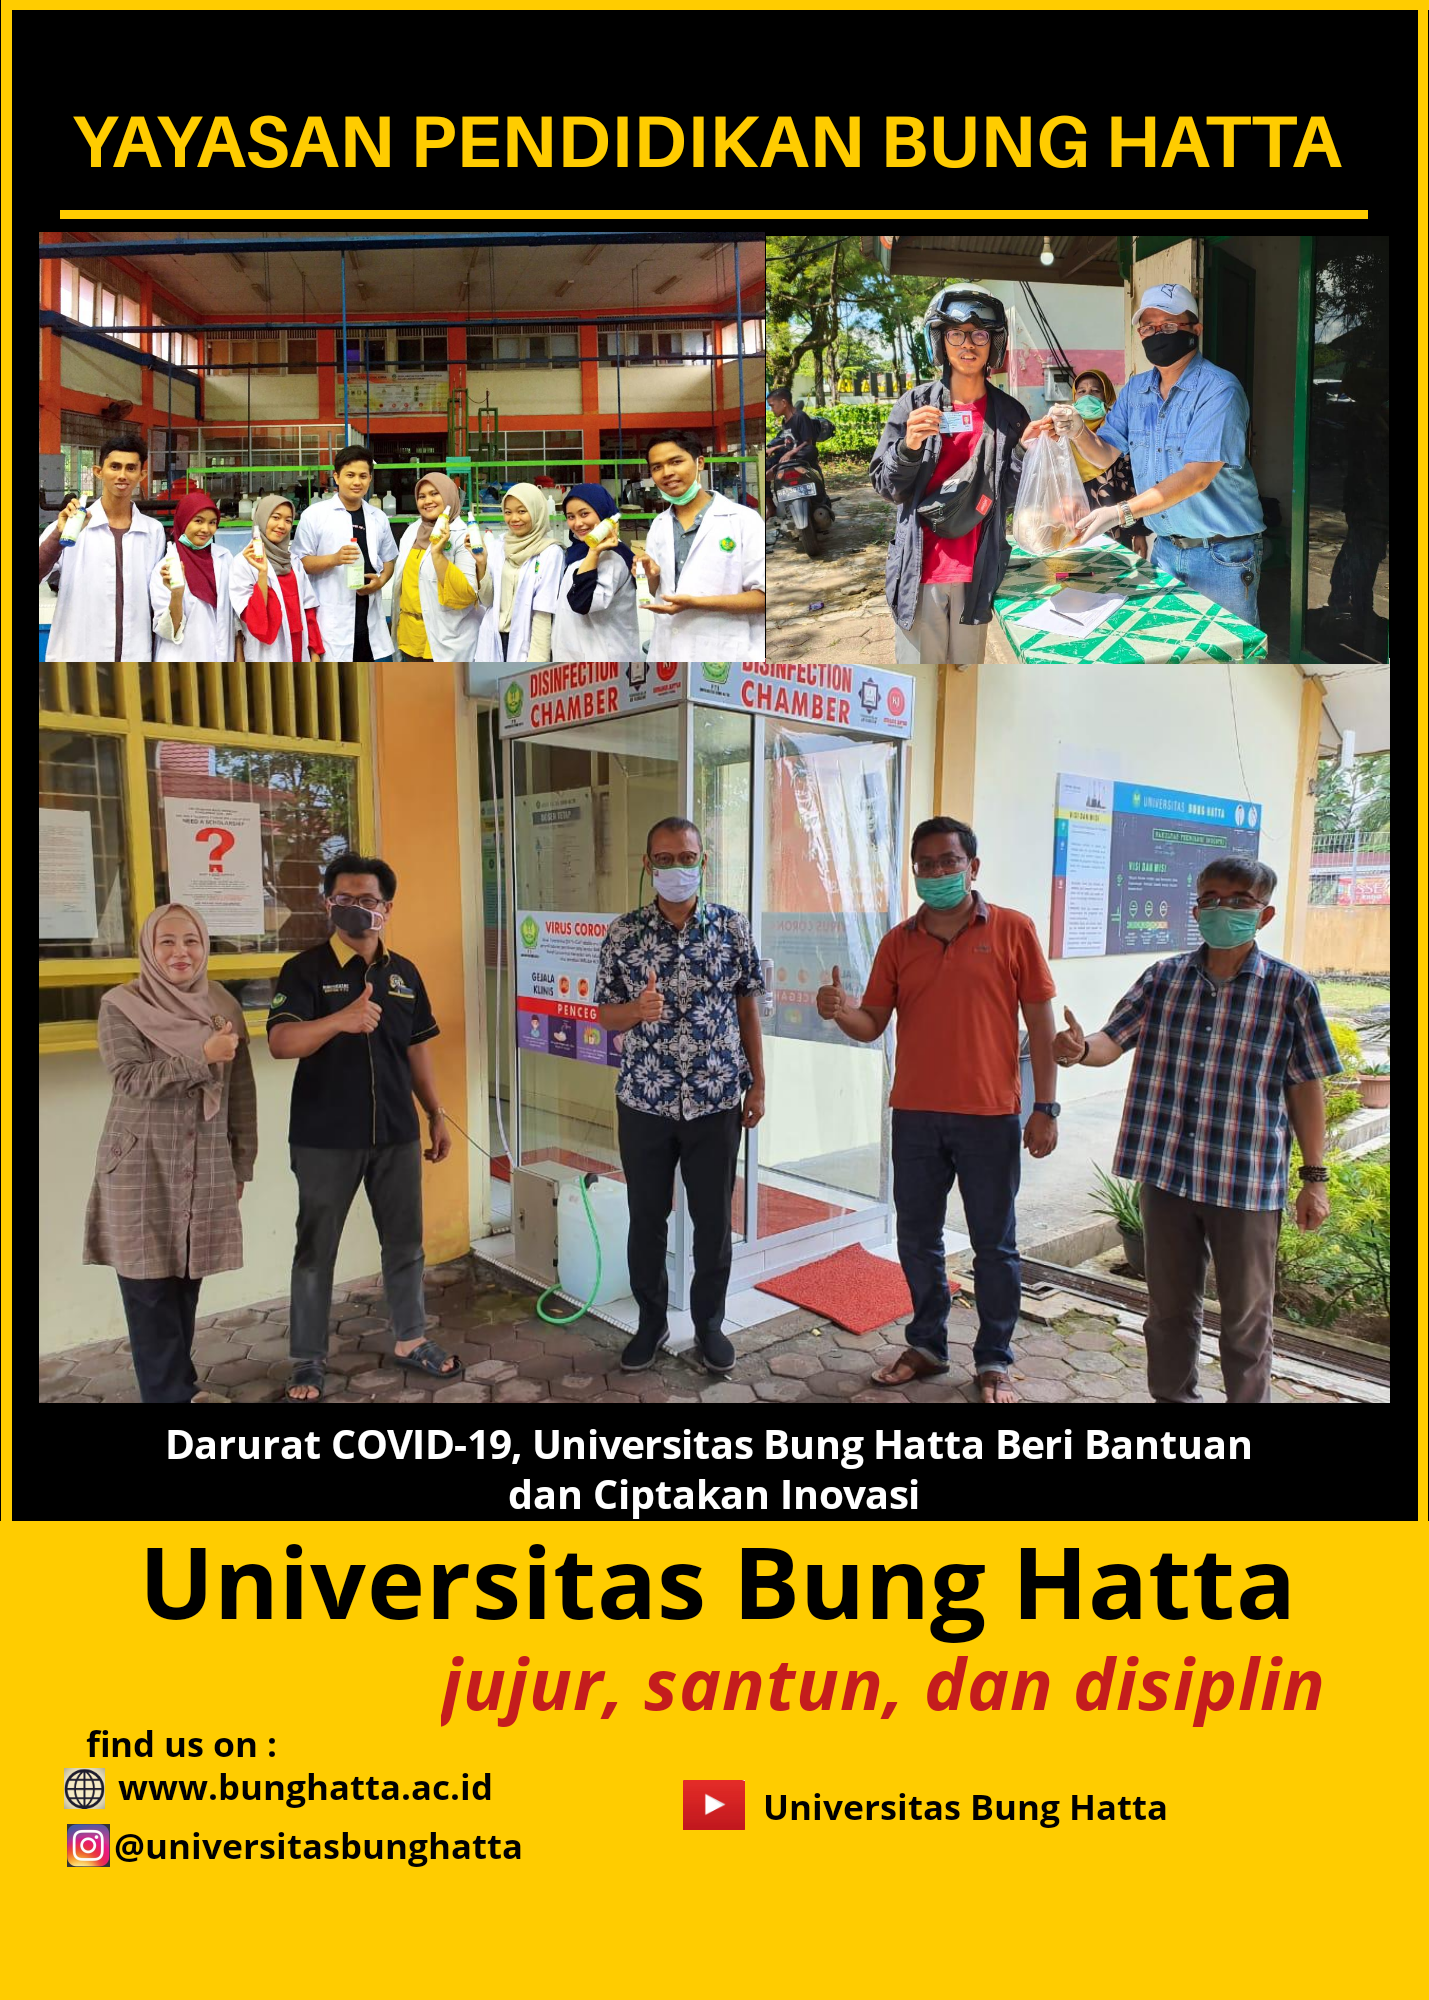 Darurat COVID-19, Universitas Bung Hatta Beri Bantuan dan Ciptakan Inovasi